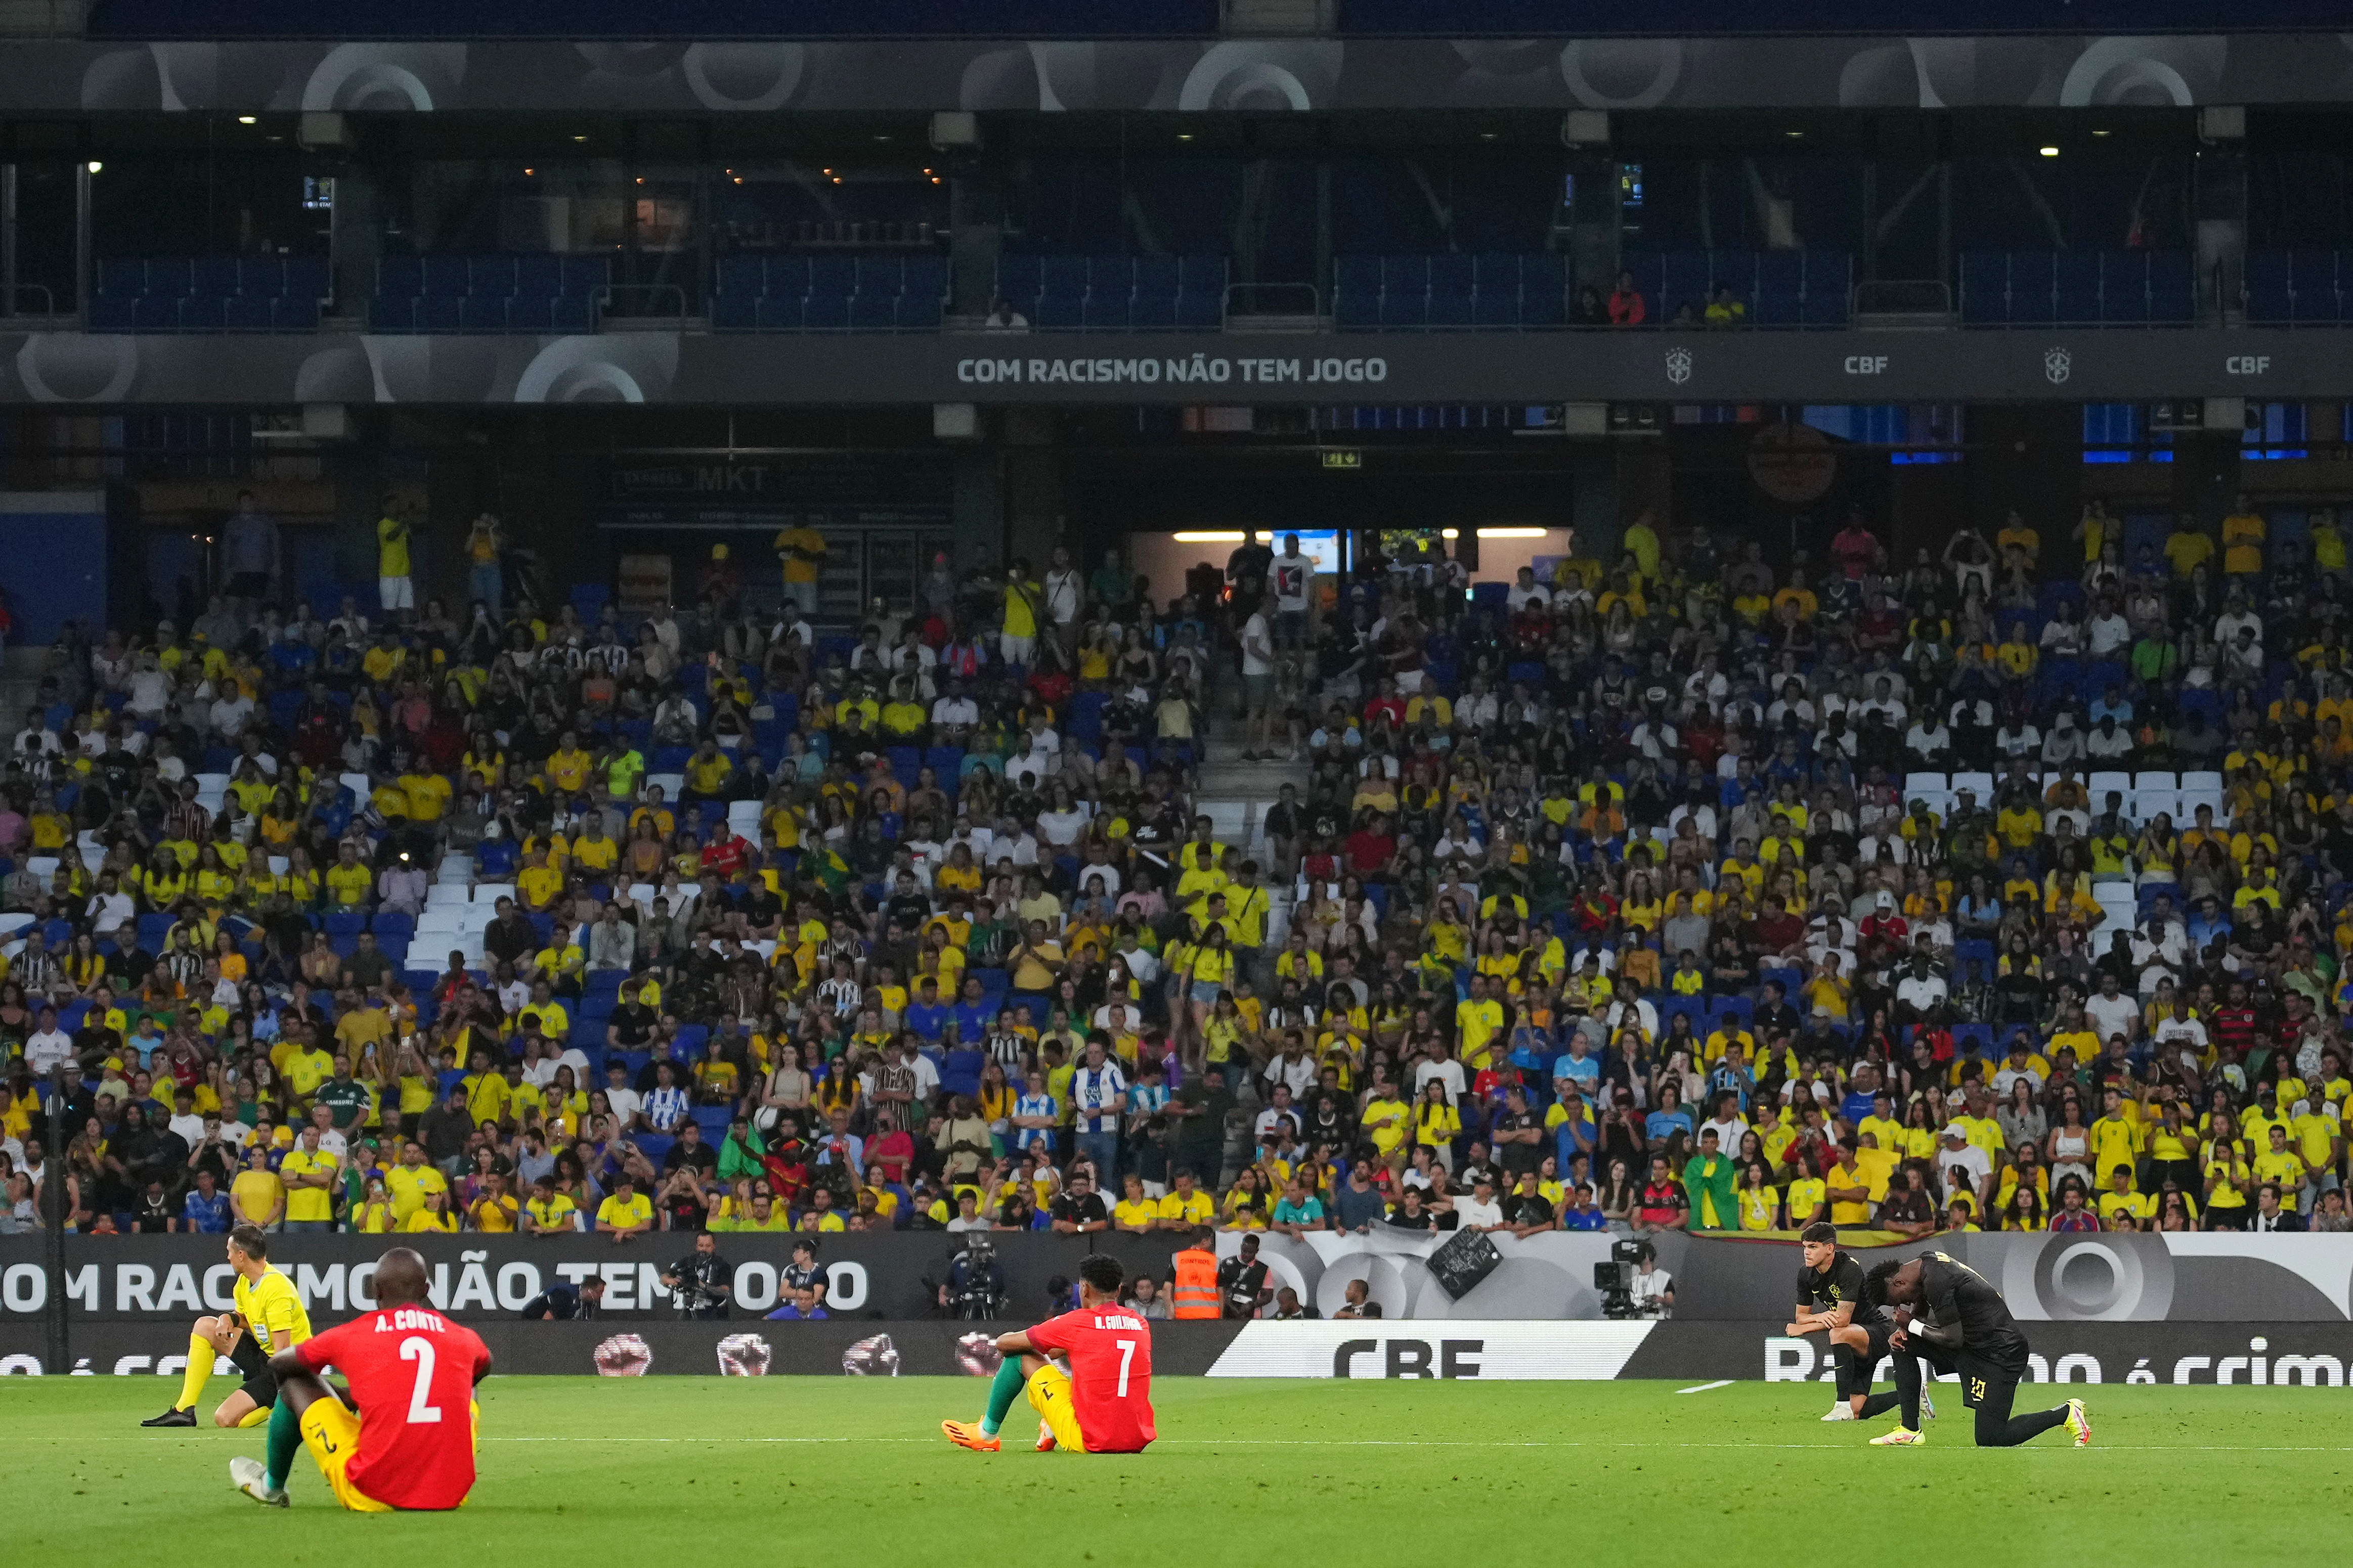 Brasile in maglia nera contro il razzismo per 45 minuti. La gallery